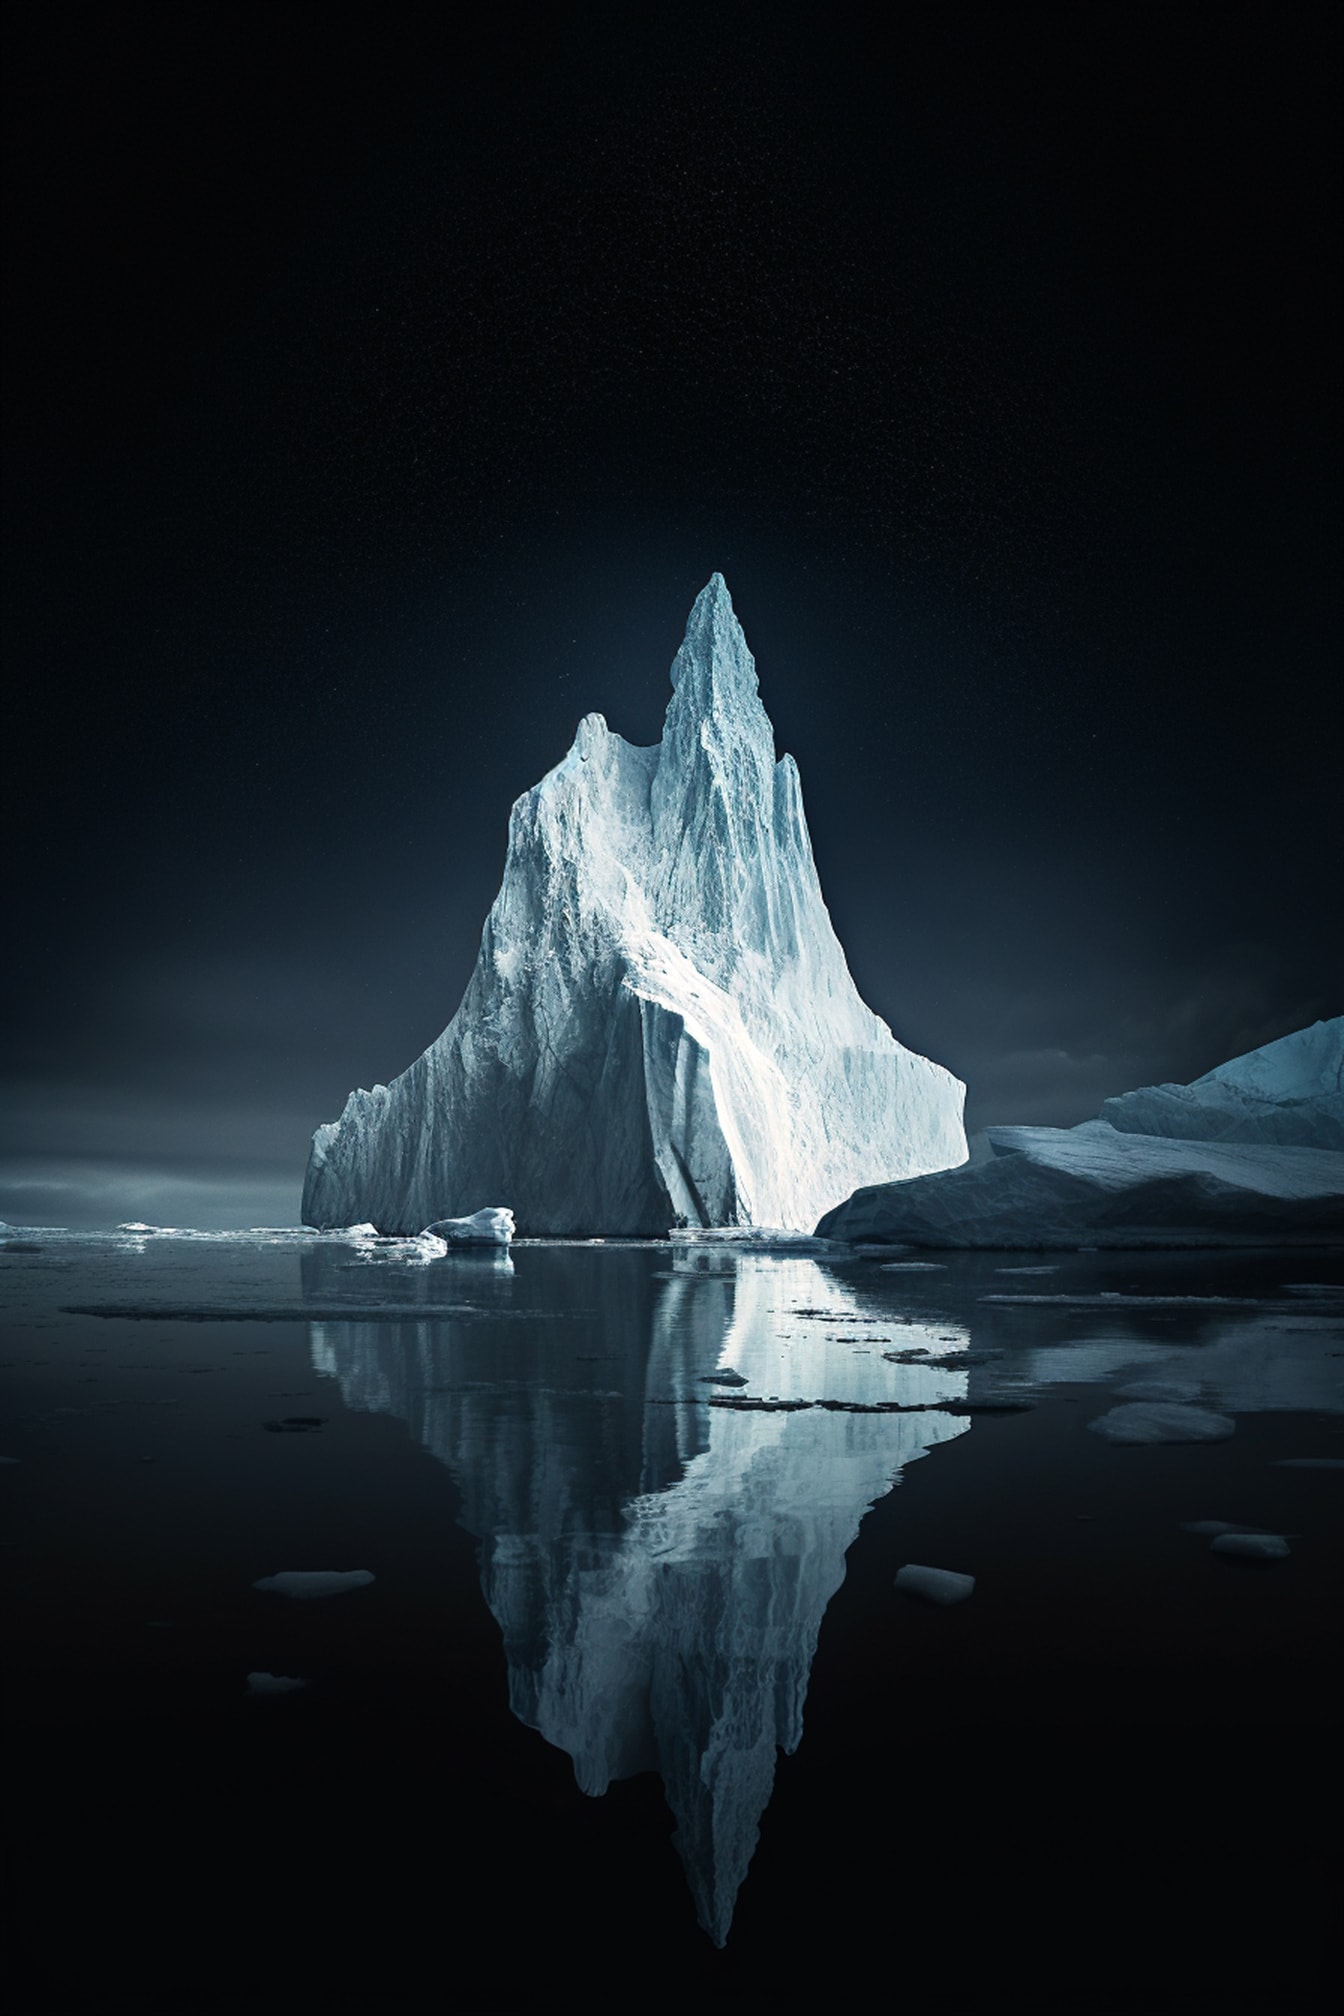 Donkere nacht bij noordpool met ijsberg grafische illsutration